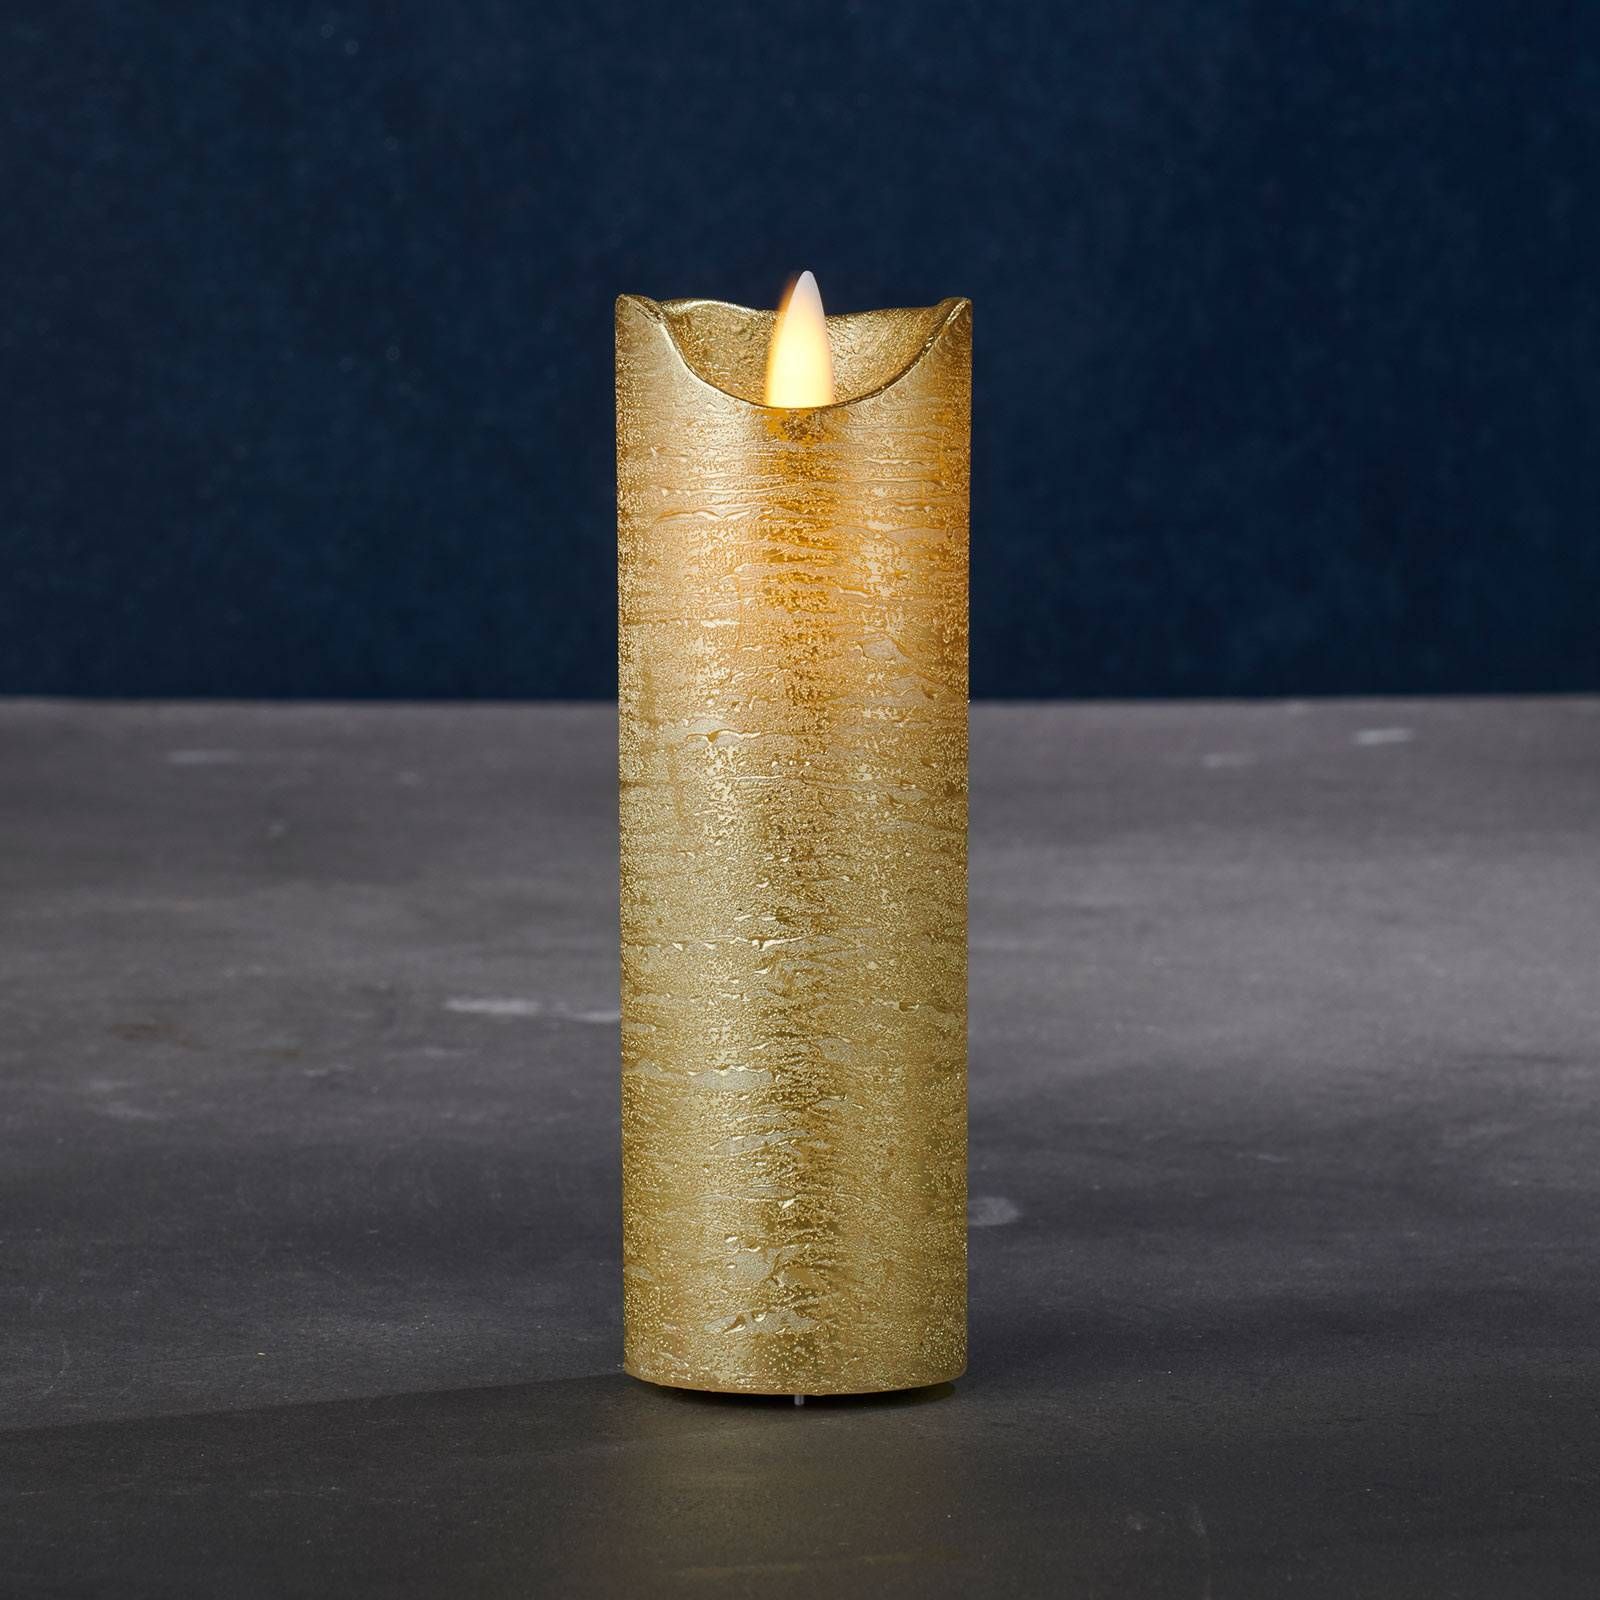 Sirius LED sviečka Sara Exclusive zlatá, Ø5cm, výška 15cm, vosk, hliník, K: 15cm